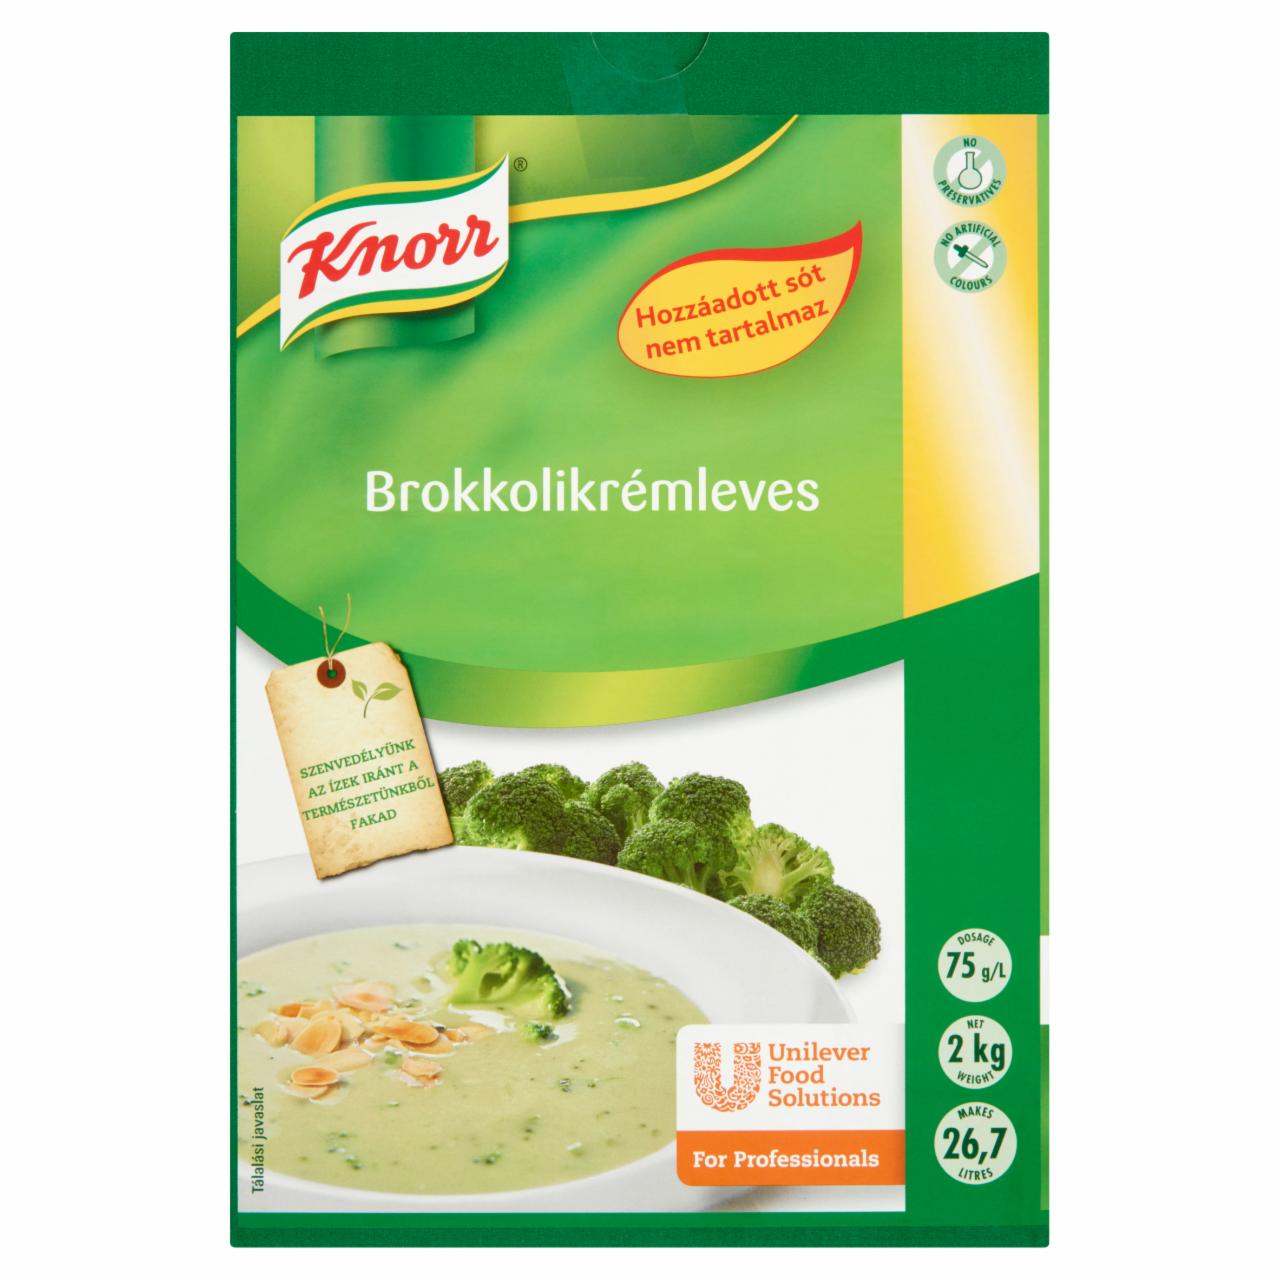 Képek - Knorr brokkolikrémleves alap hozzáadott só nélkül 2 kg